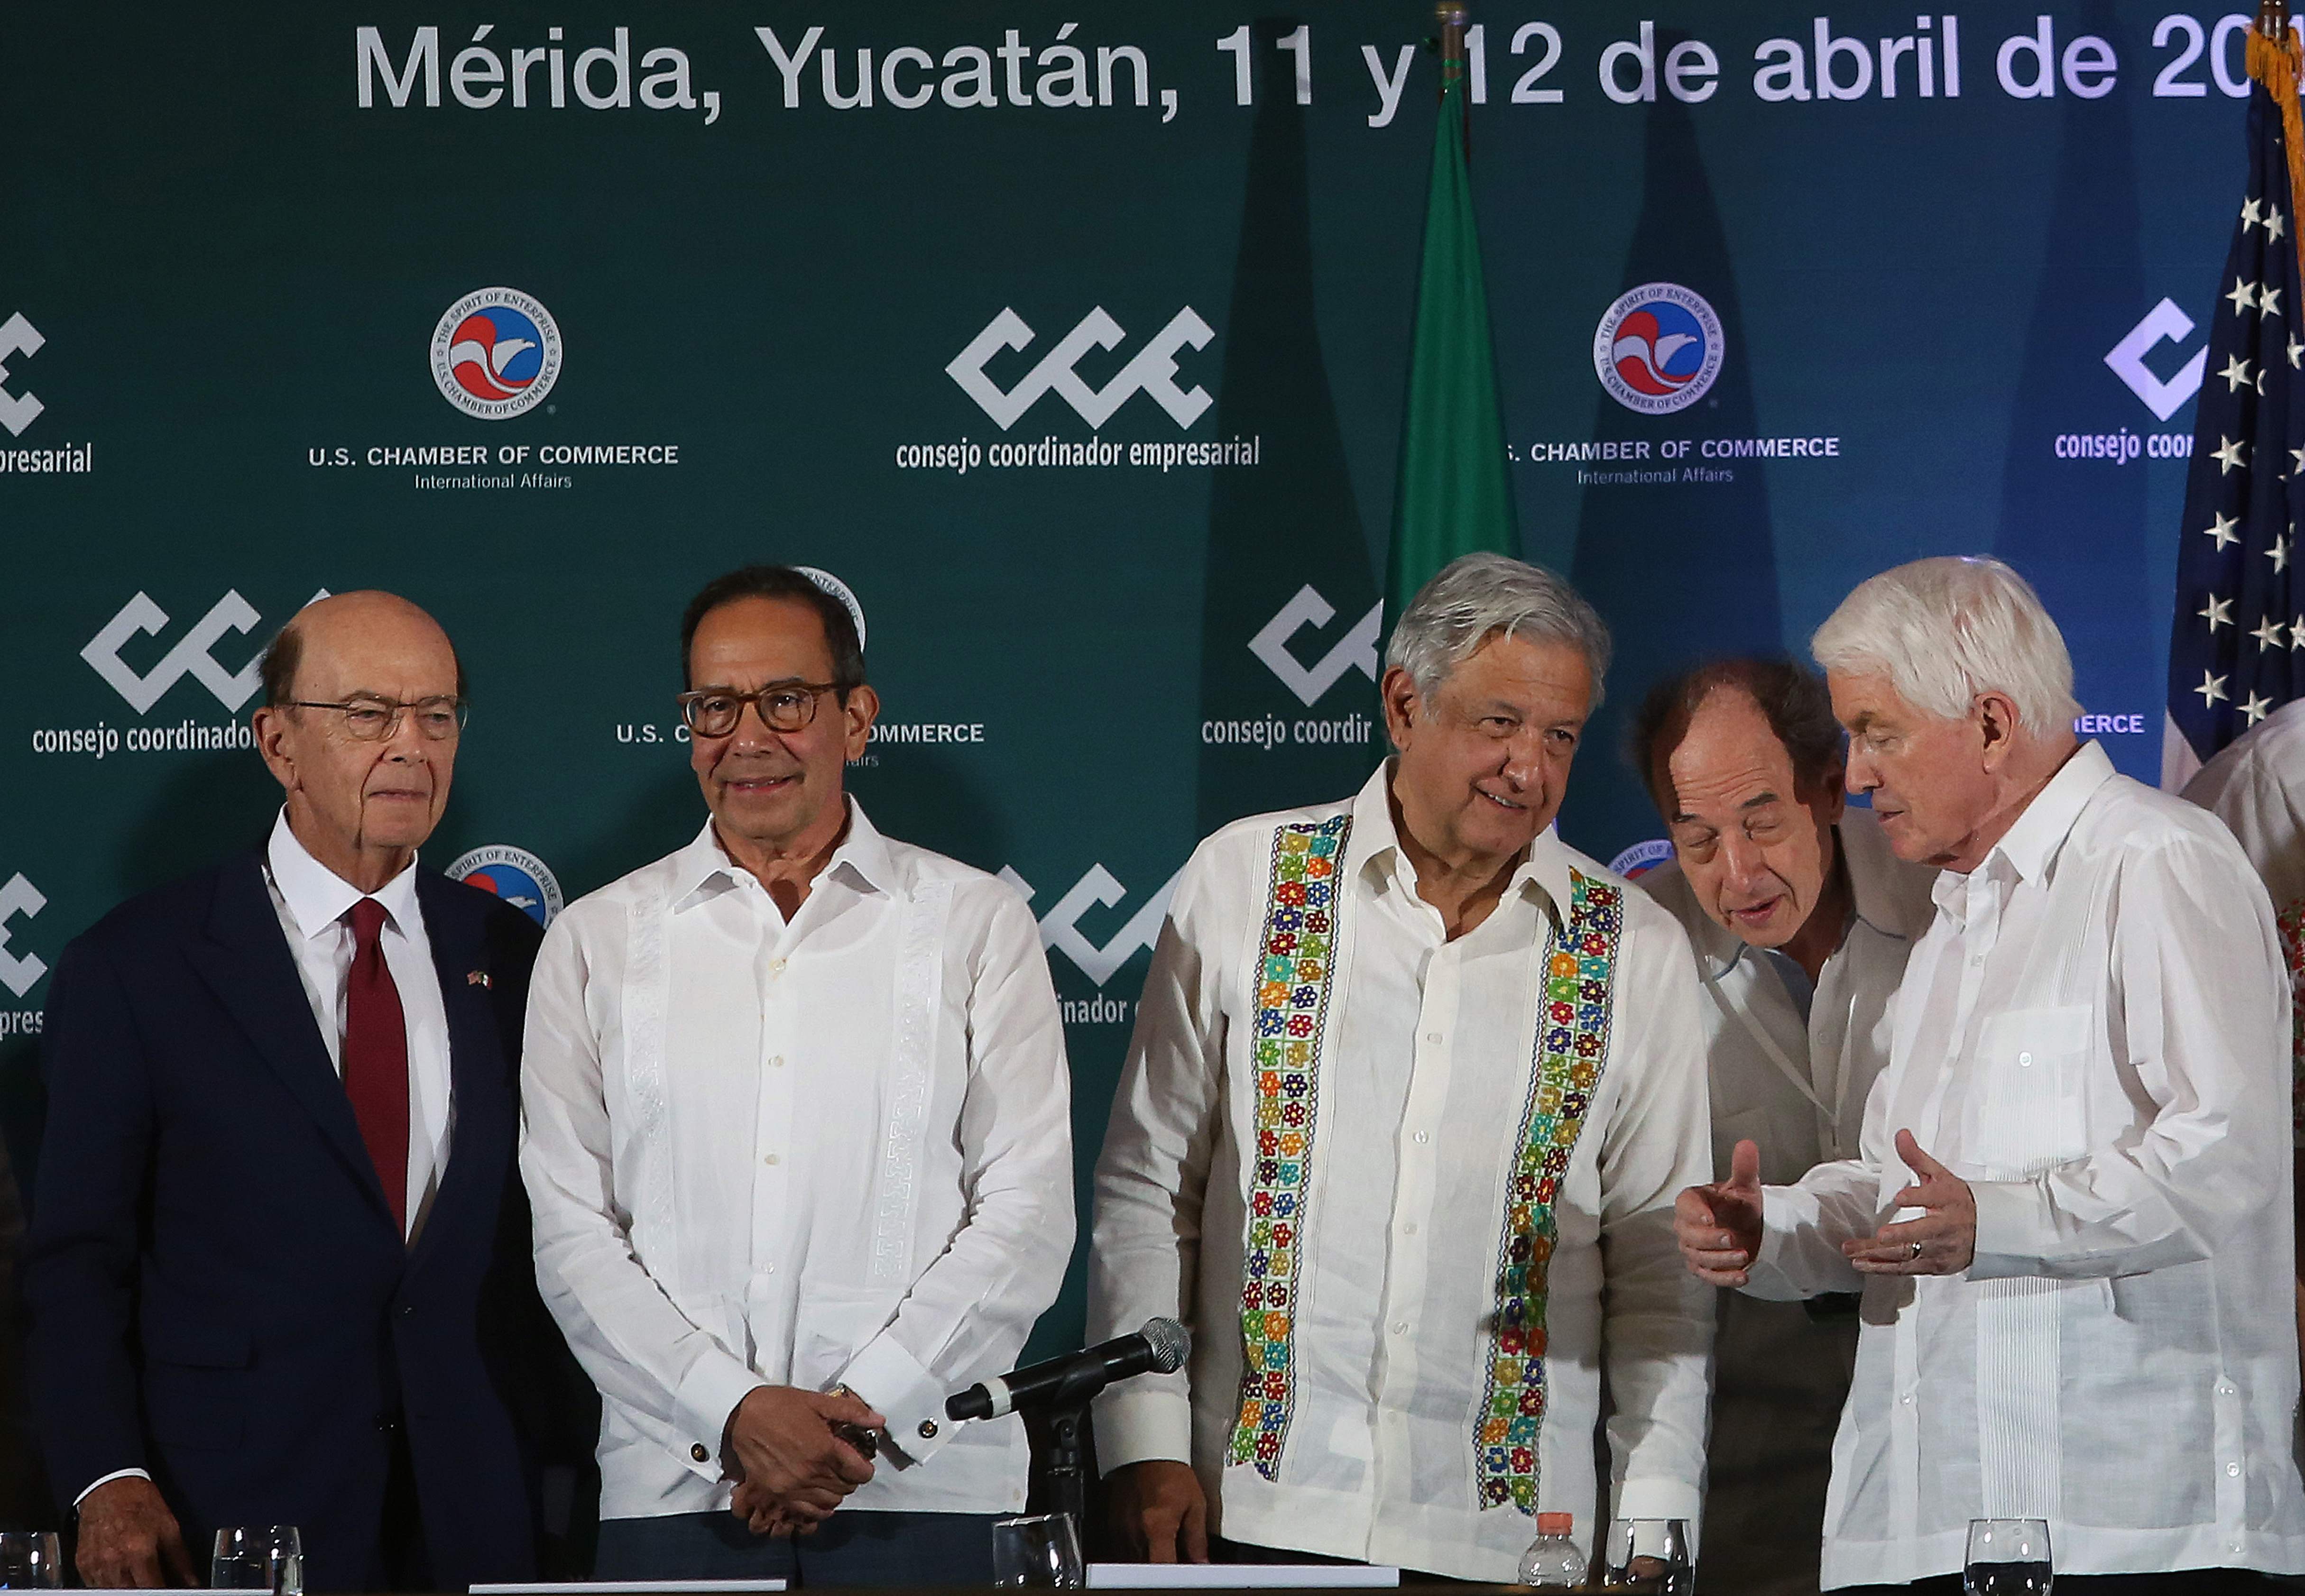 Wilbur Ross, secretario de Comercio de Estados Unidos, izquierda, participó en Mérida junto al presidente de México, Andrés Manuel López Obrador, centro, en un encuentro de empresarios para impulsar un plan regional de inversiones el pasado viernes. (Foto Prensa Libre: AFP)